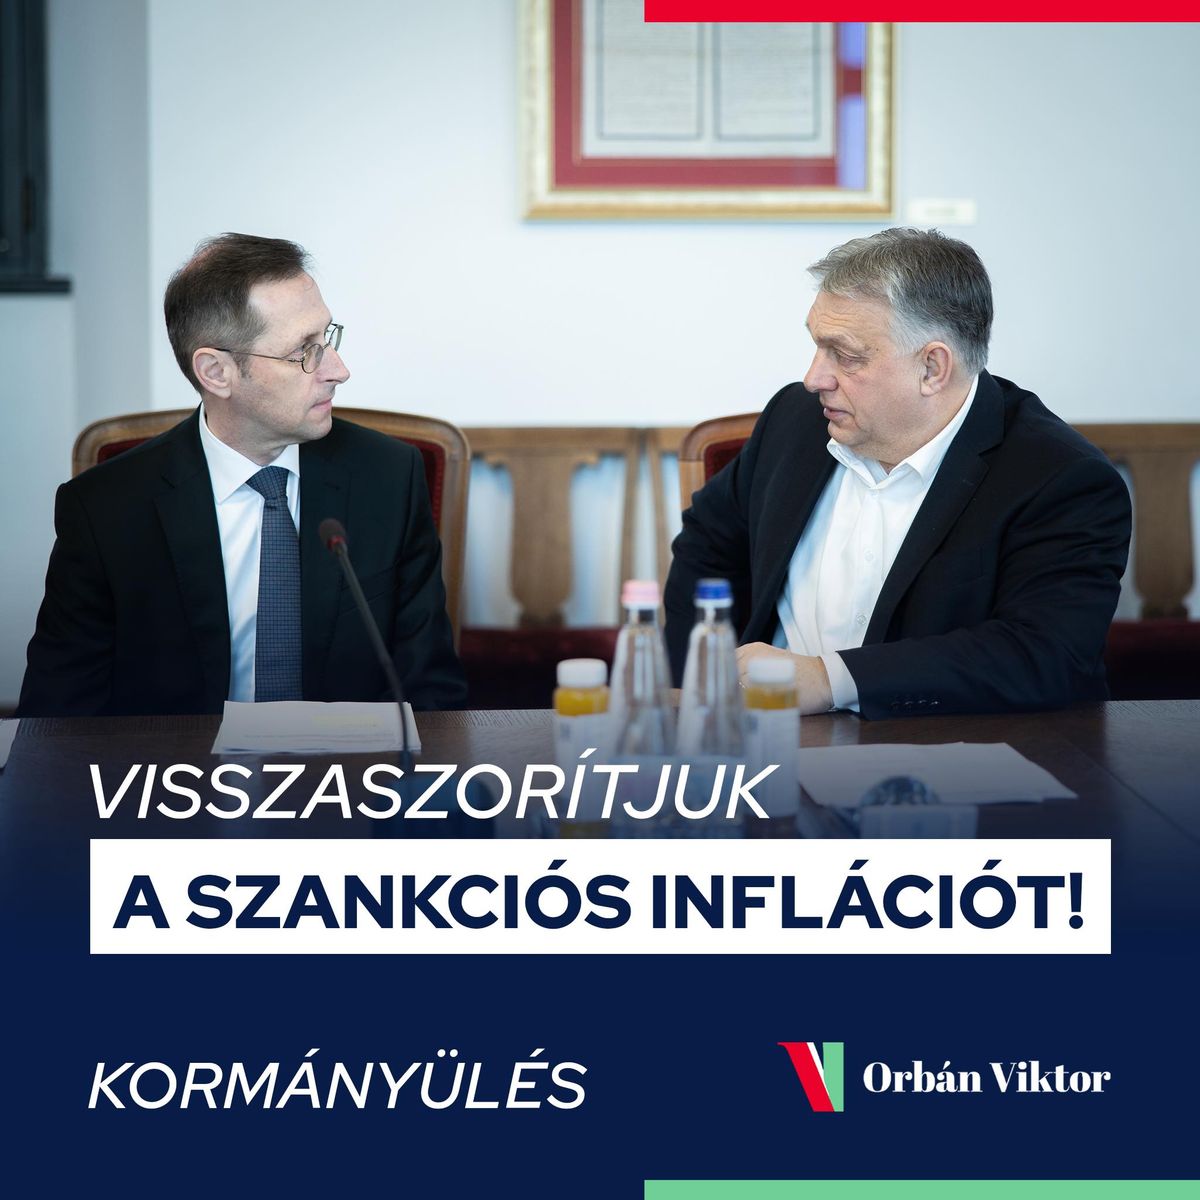 Orbán Viktor: Visszaszorítjuk a szankciós inflációt!